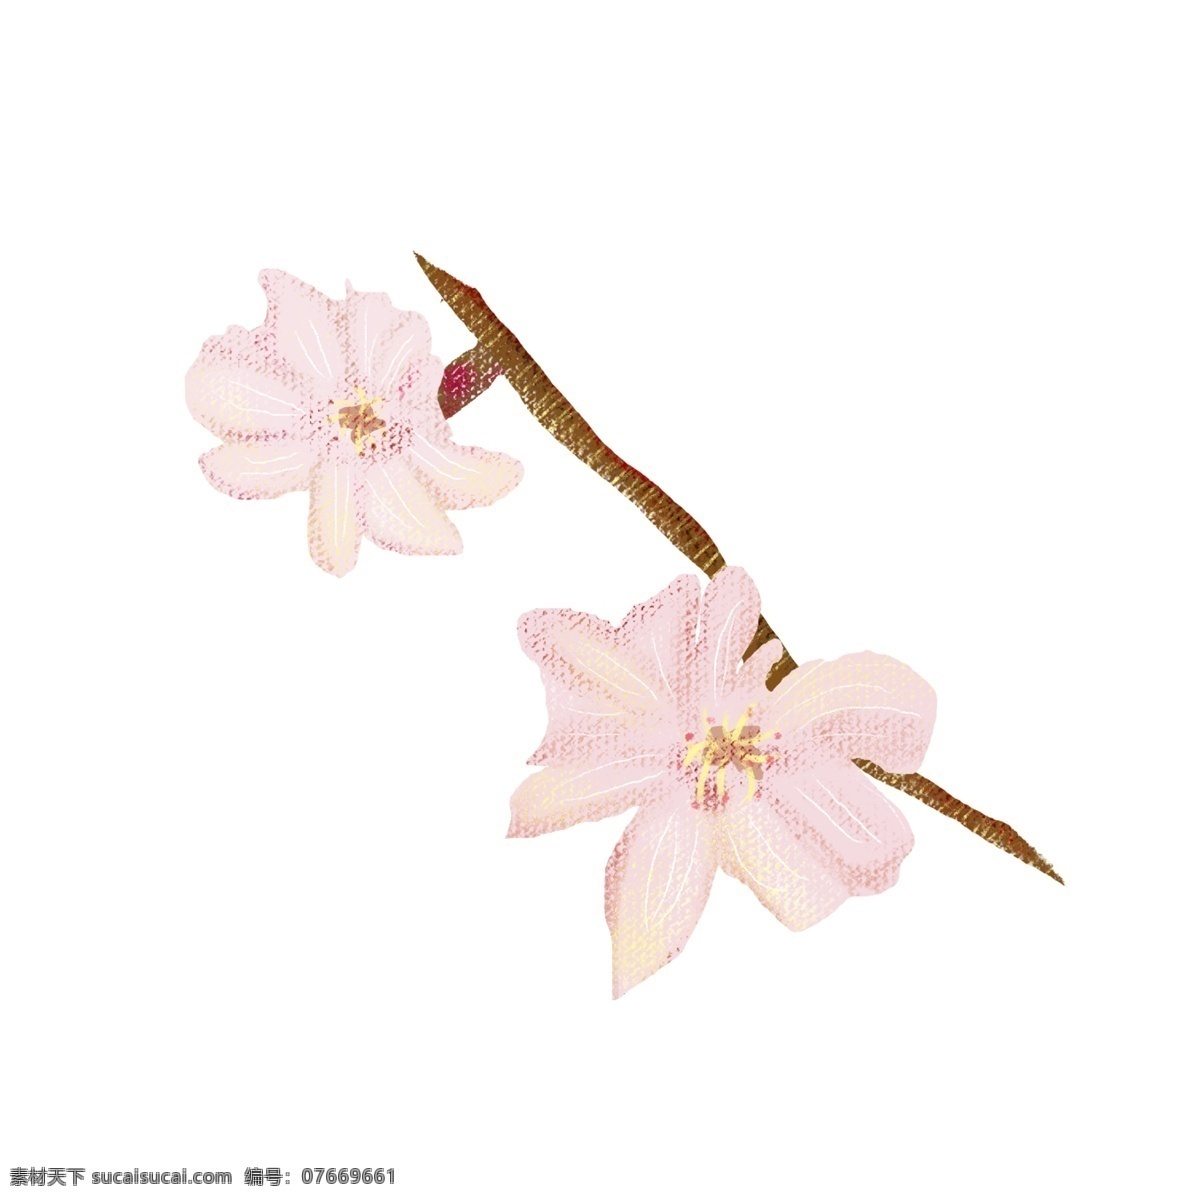 粉色 樱花 树枝 小树枝 两朵花 可爱 俏皮 美丽 粉嫩 春天 漂亮 迷人 东京 恋人 心动 美好 爱情 装饰